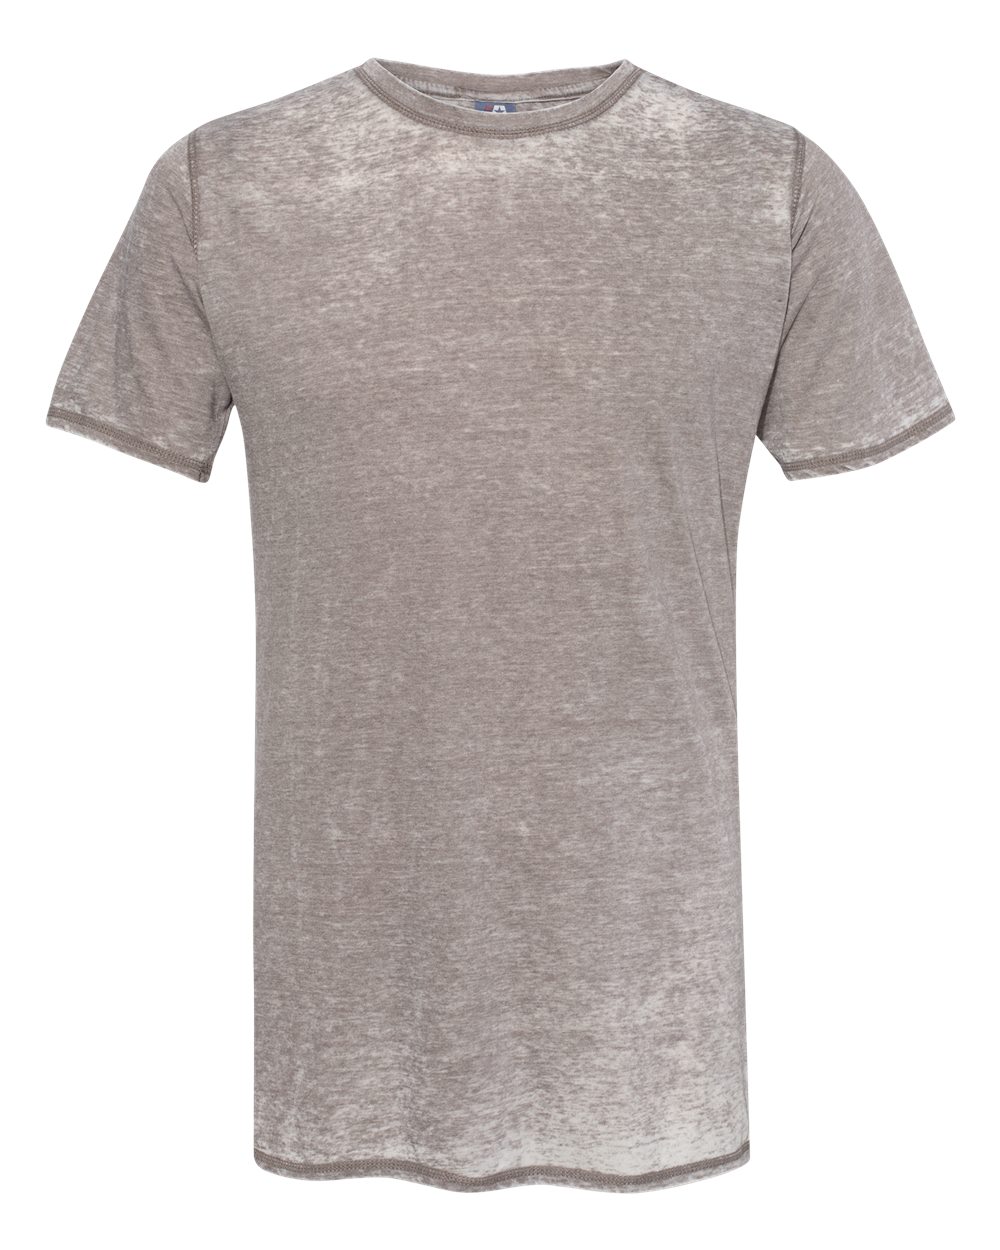 J. America - 8115 - Zen Jersey Short Sleeve T-Shirt